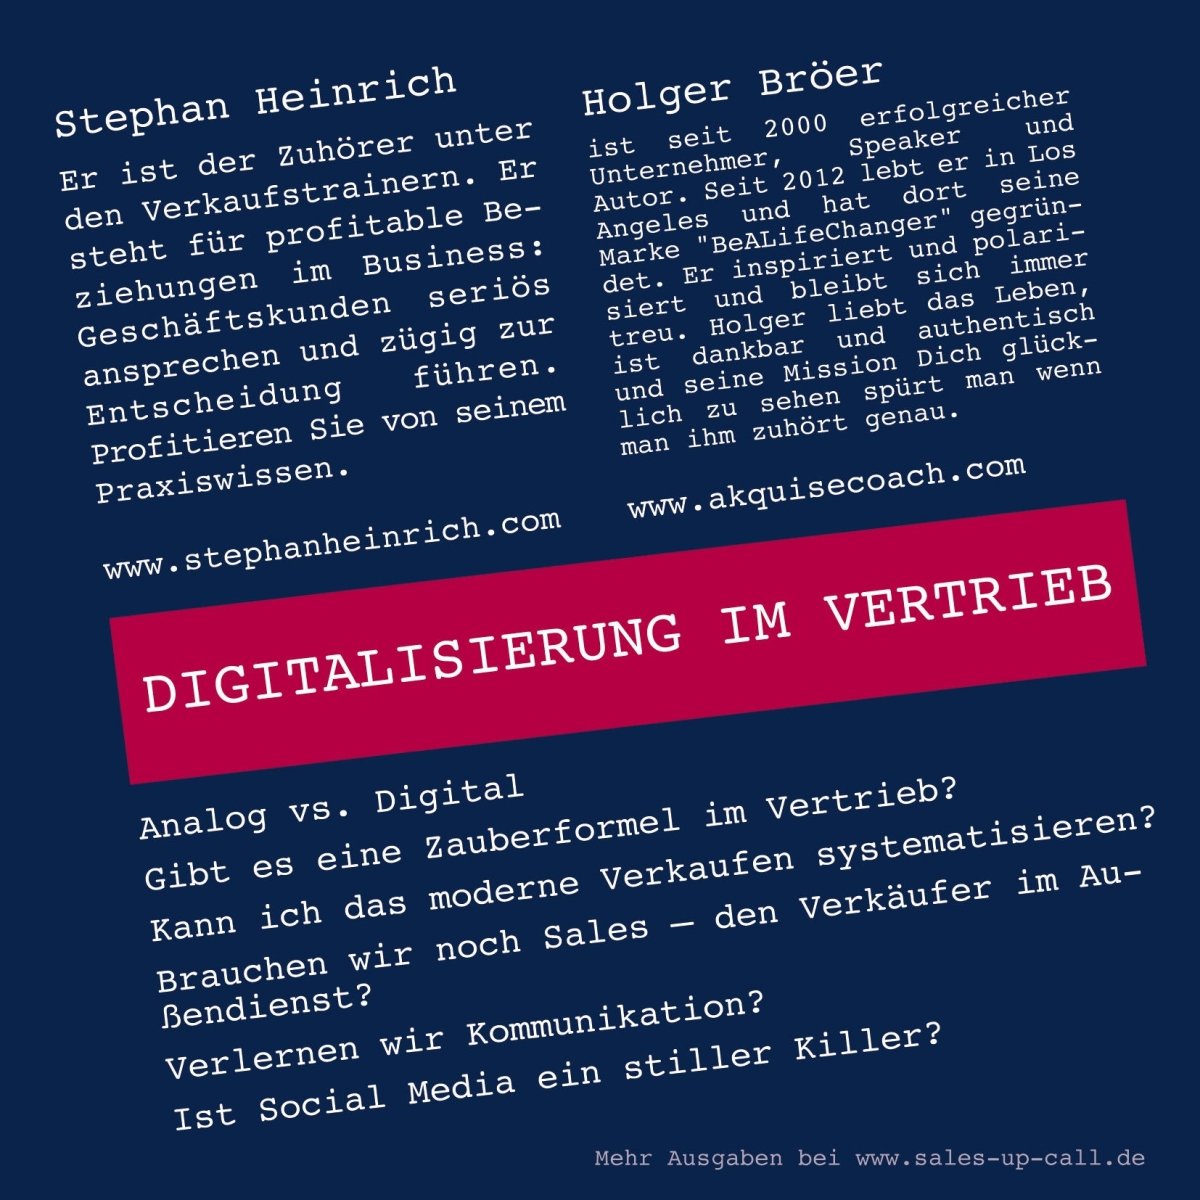 Digitalisierung im Vertrieb - Sales-up-Call - Stephan Heinrich